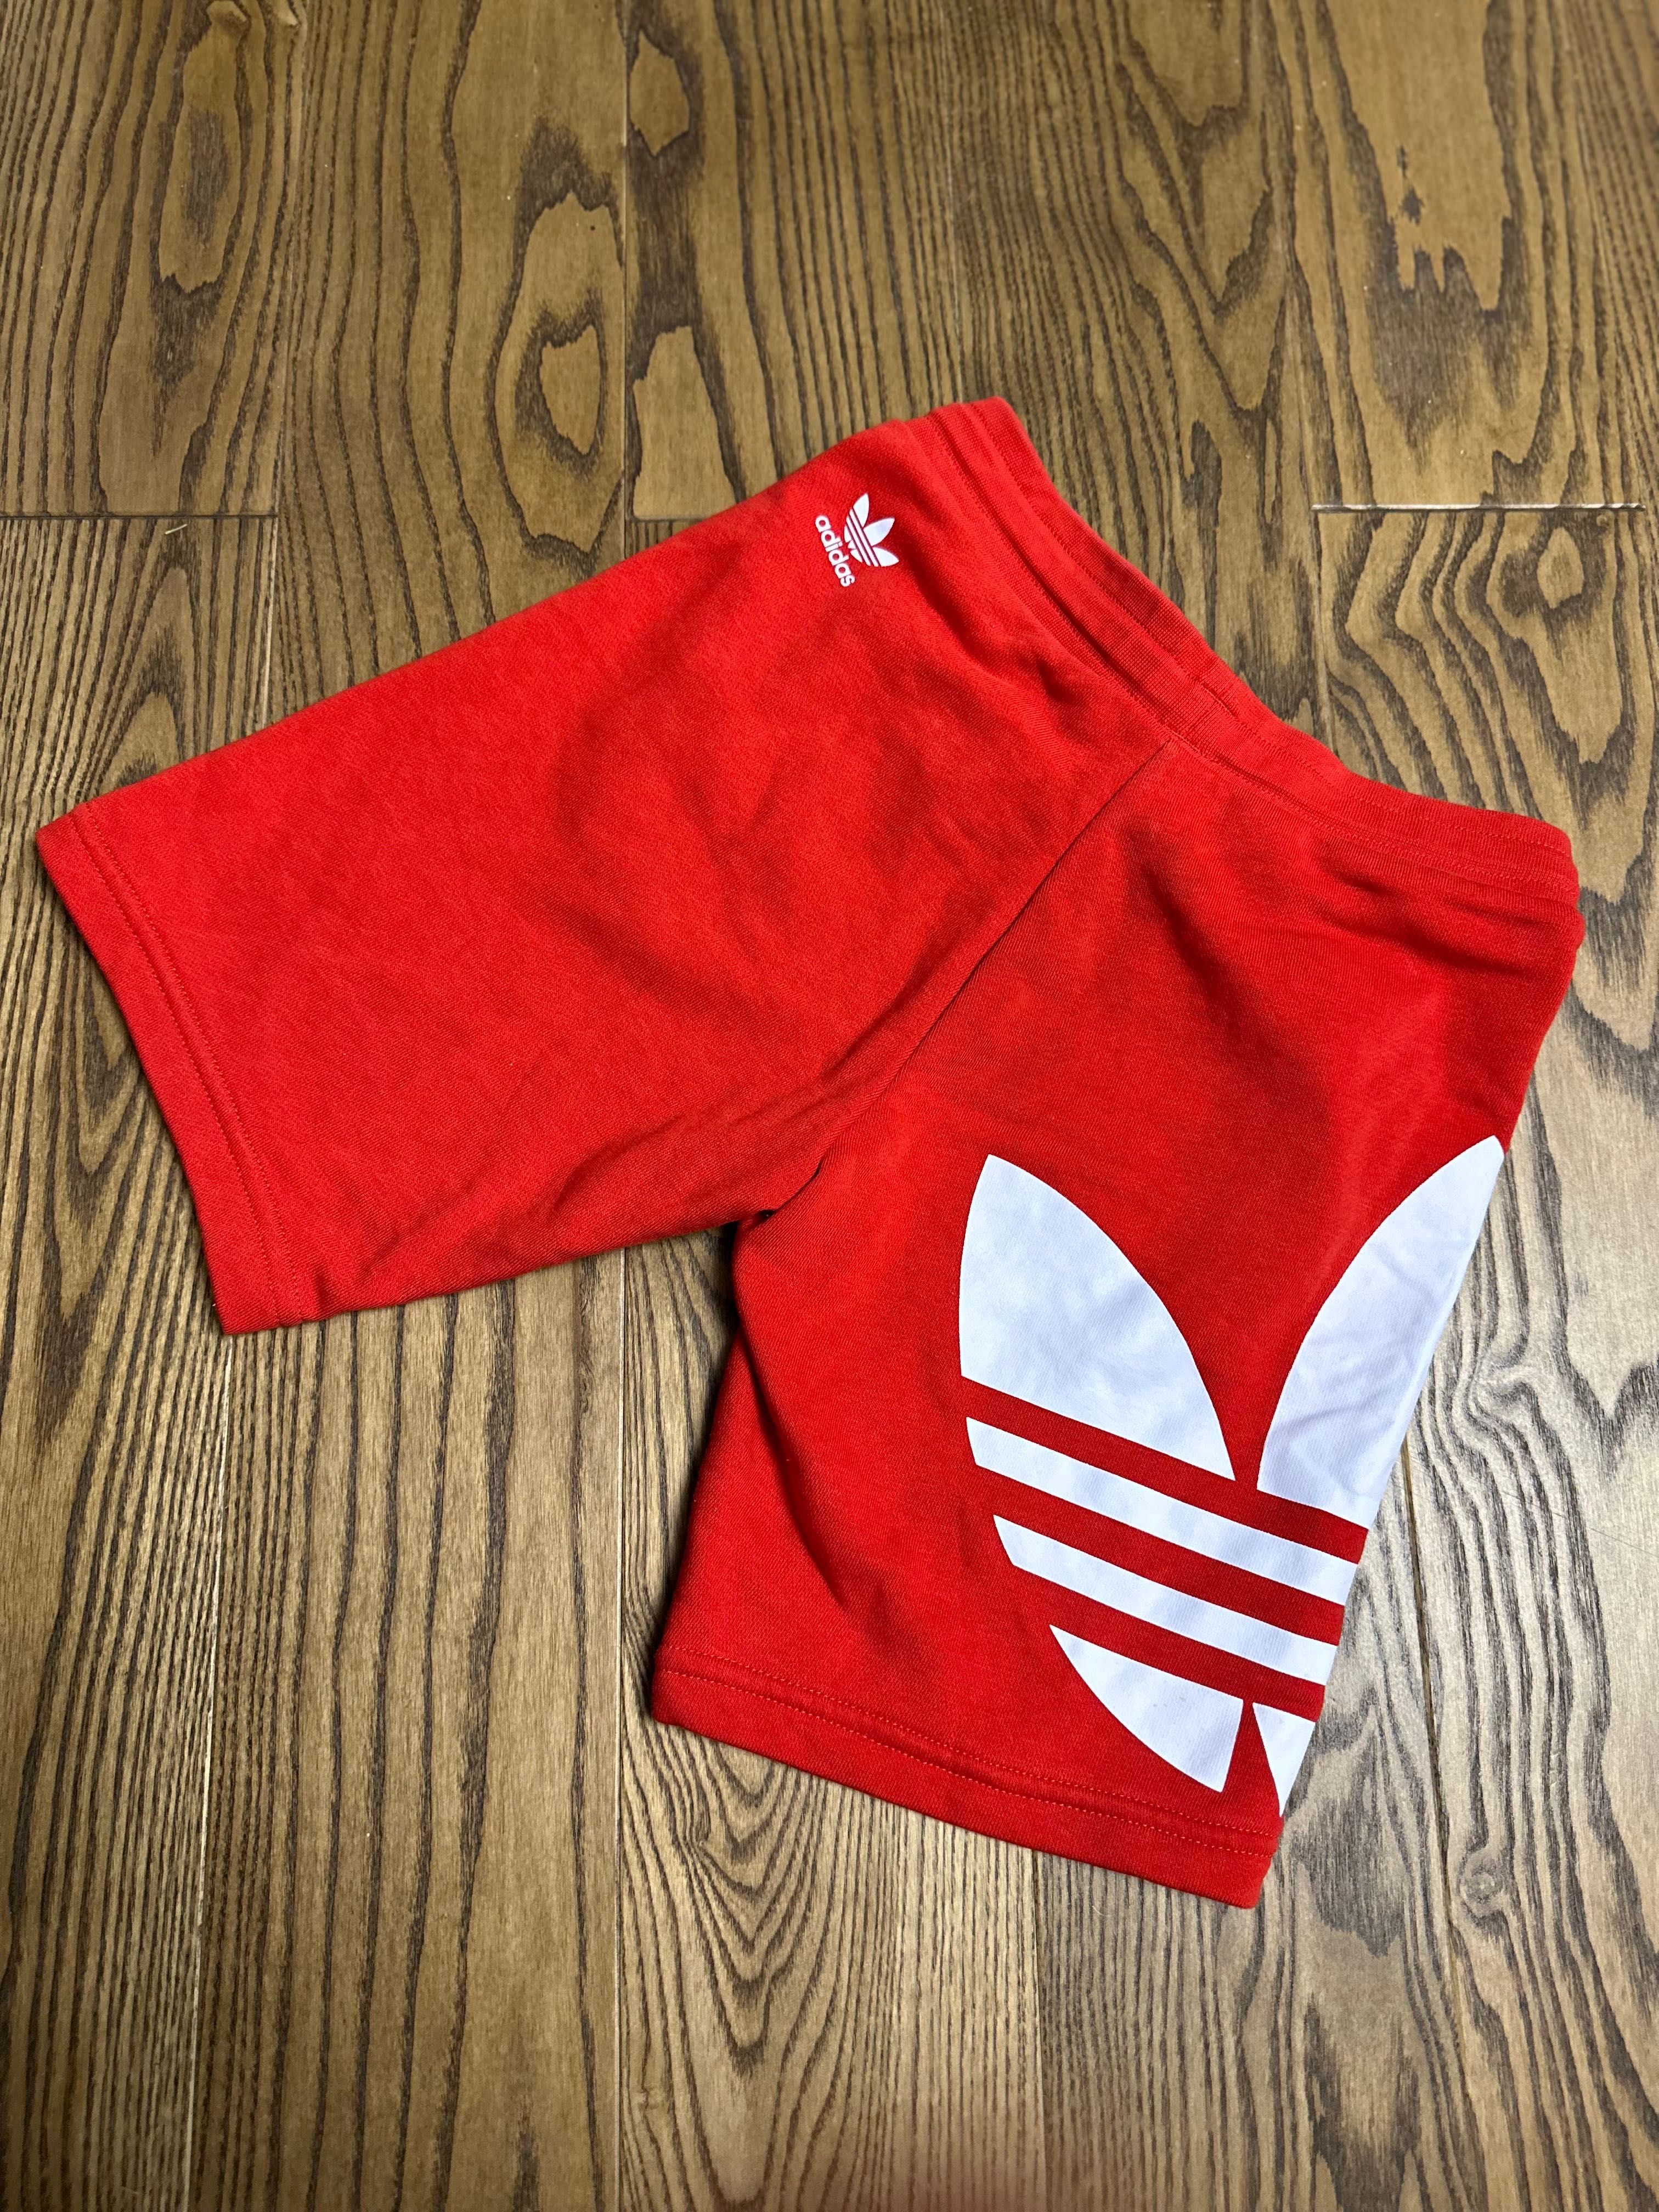 Spodenki chłopięce Adidas 9-10lat/140cm czerwone z białym logo